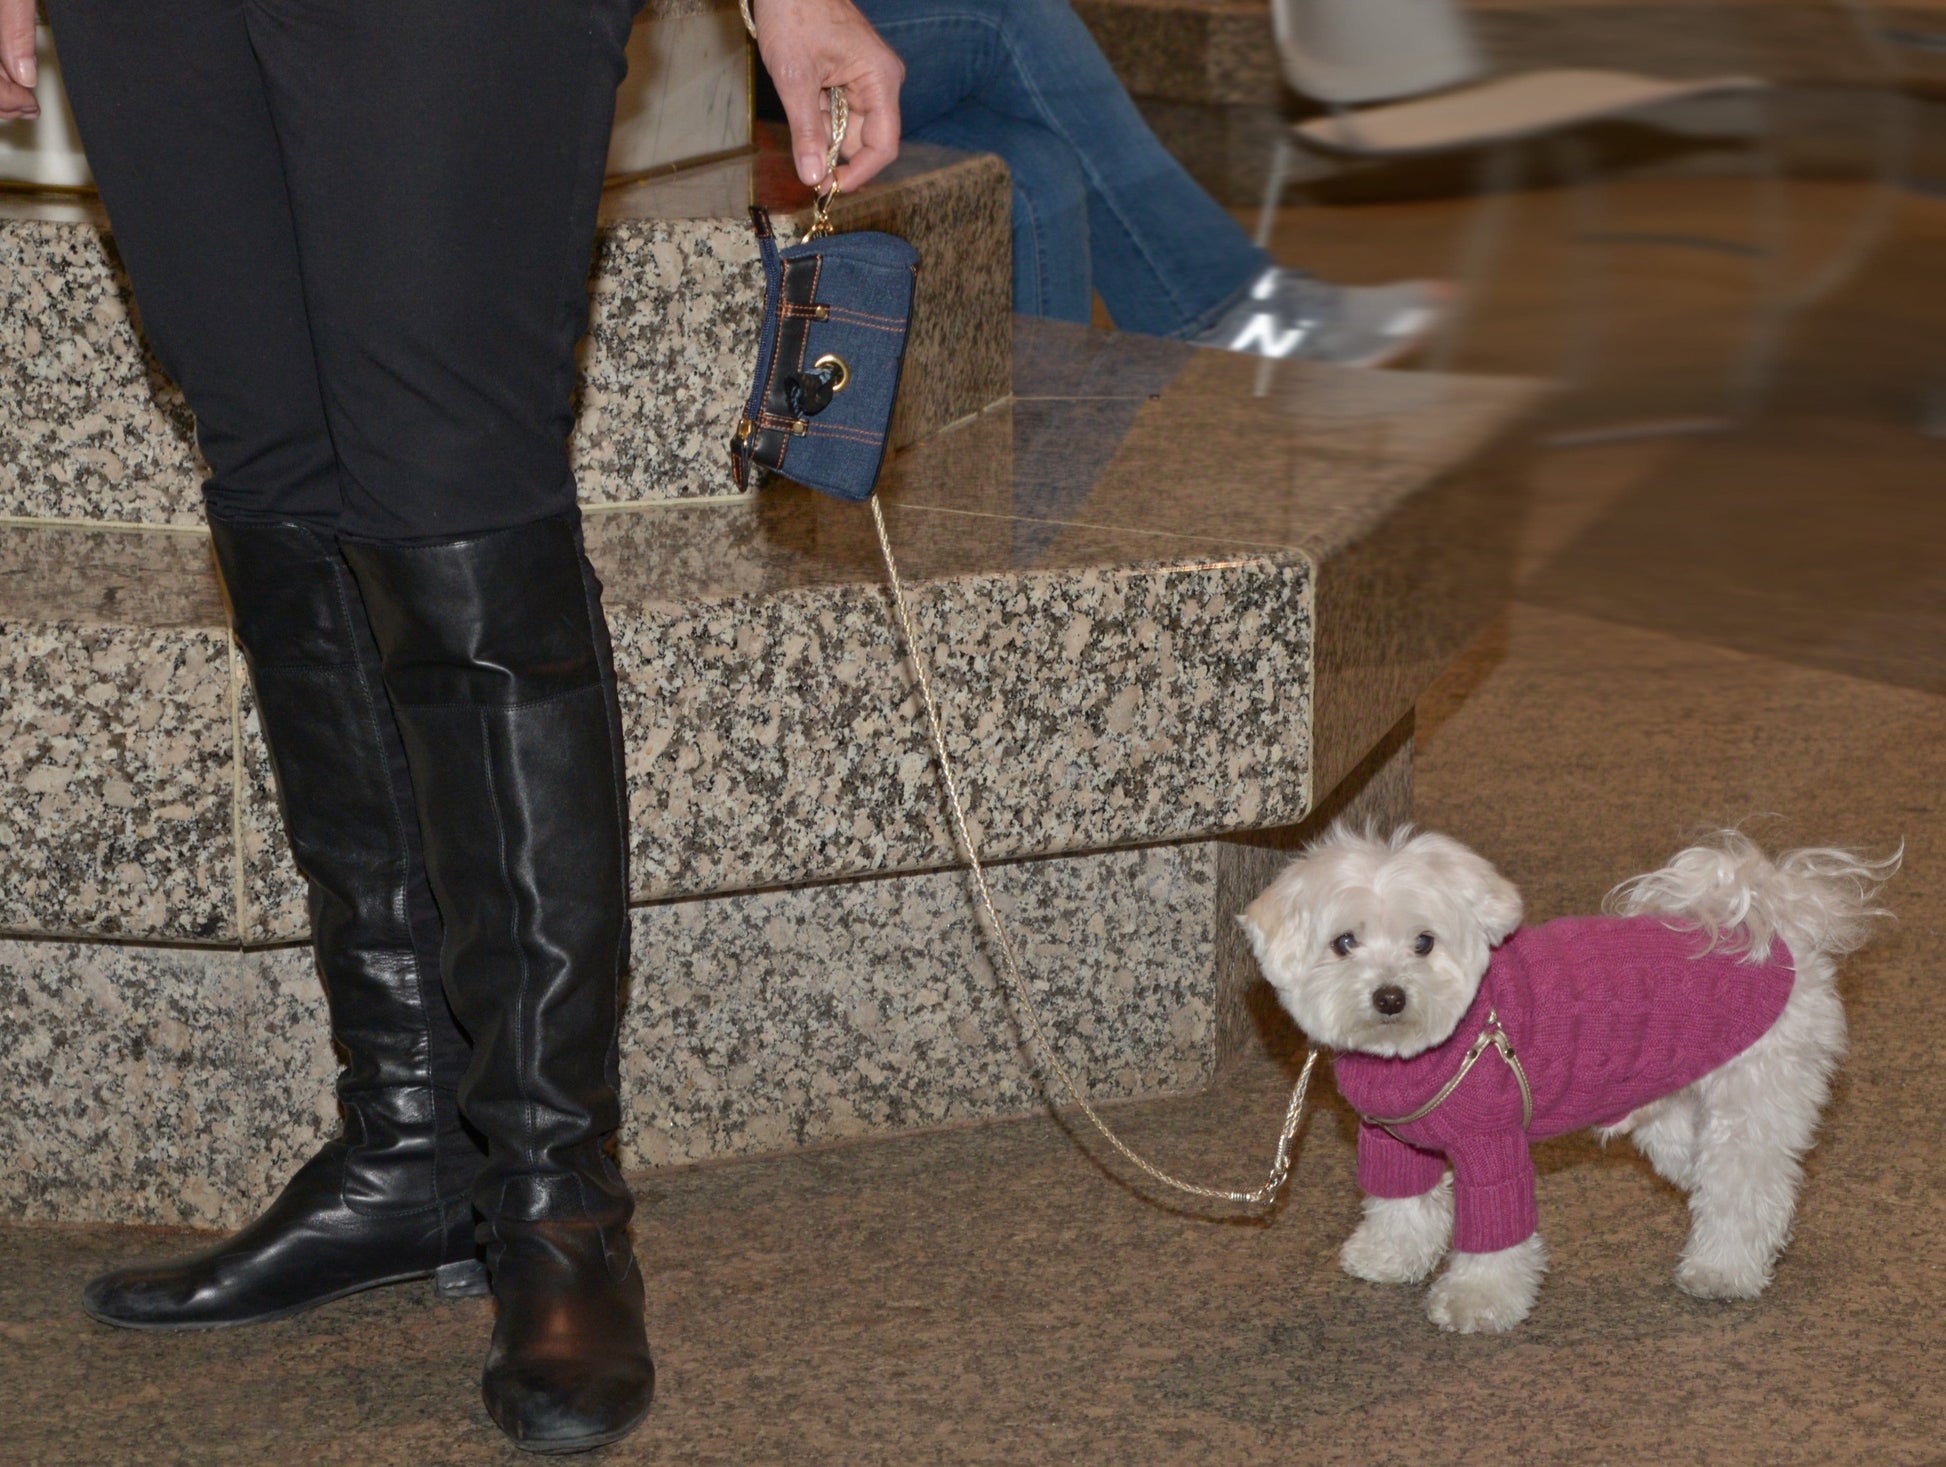 poop bag holder attached to dog on leash